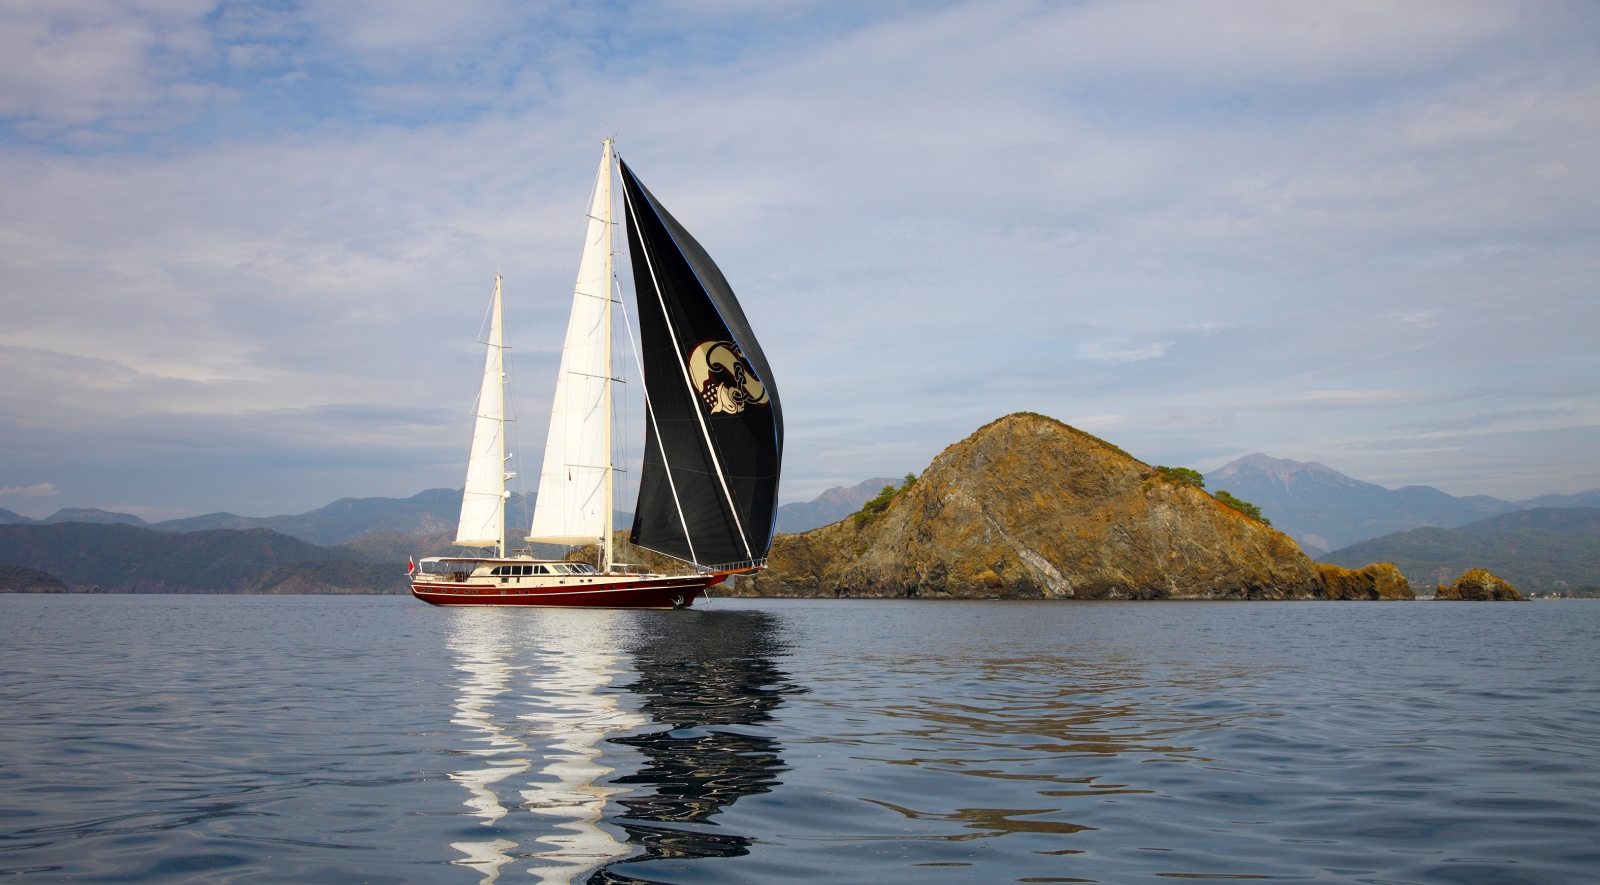 Daima sailing near Turkish island in Turkey